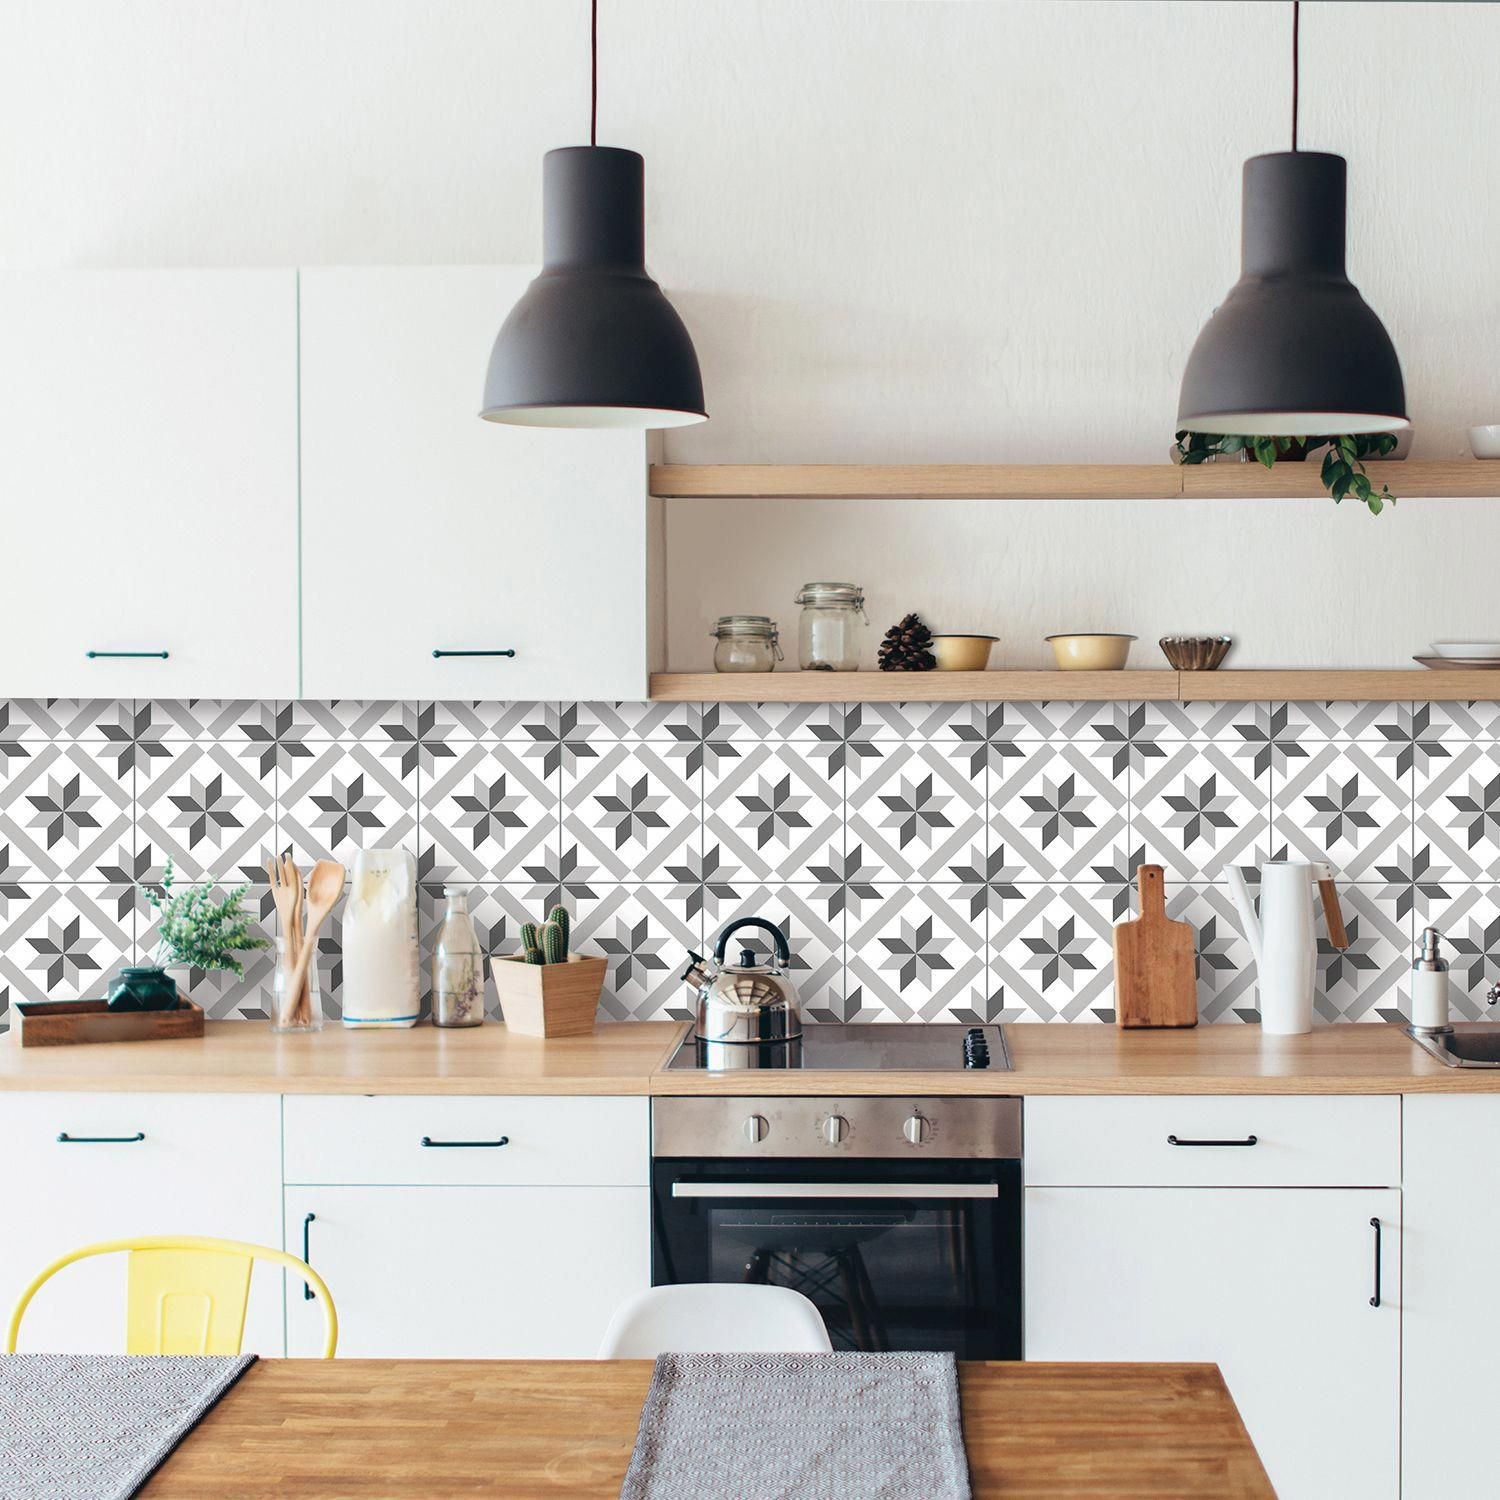 Backsplash 15 Ideias De Revestimentos Para Cozinha Casa Vogue Ambientes